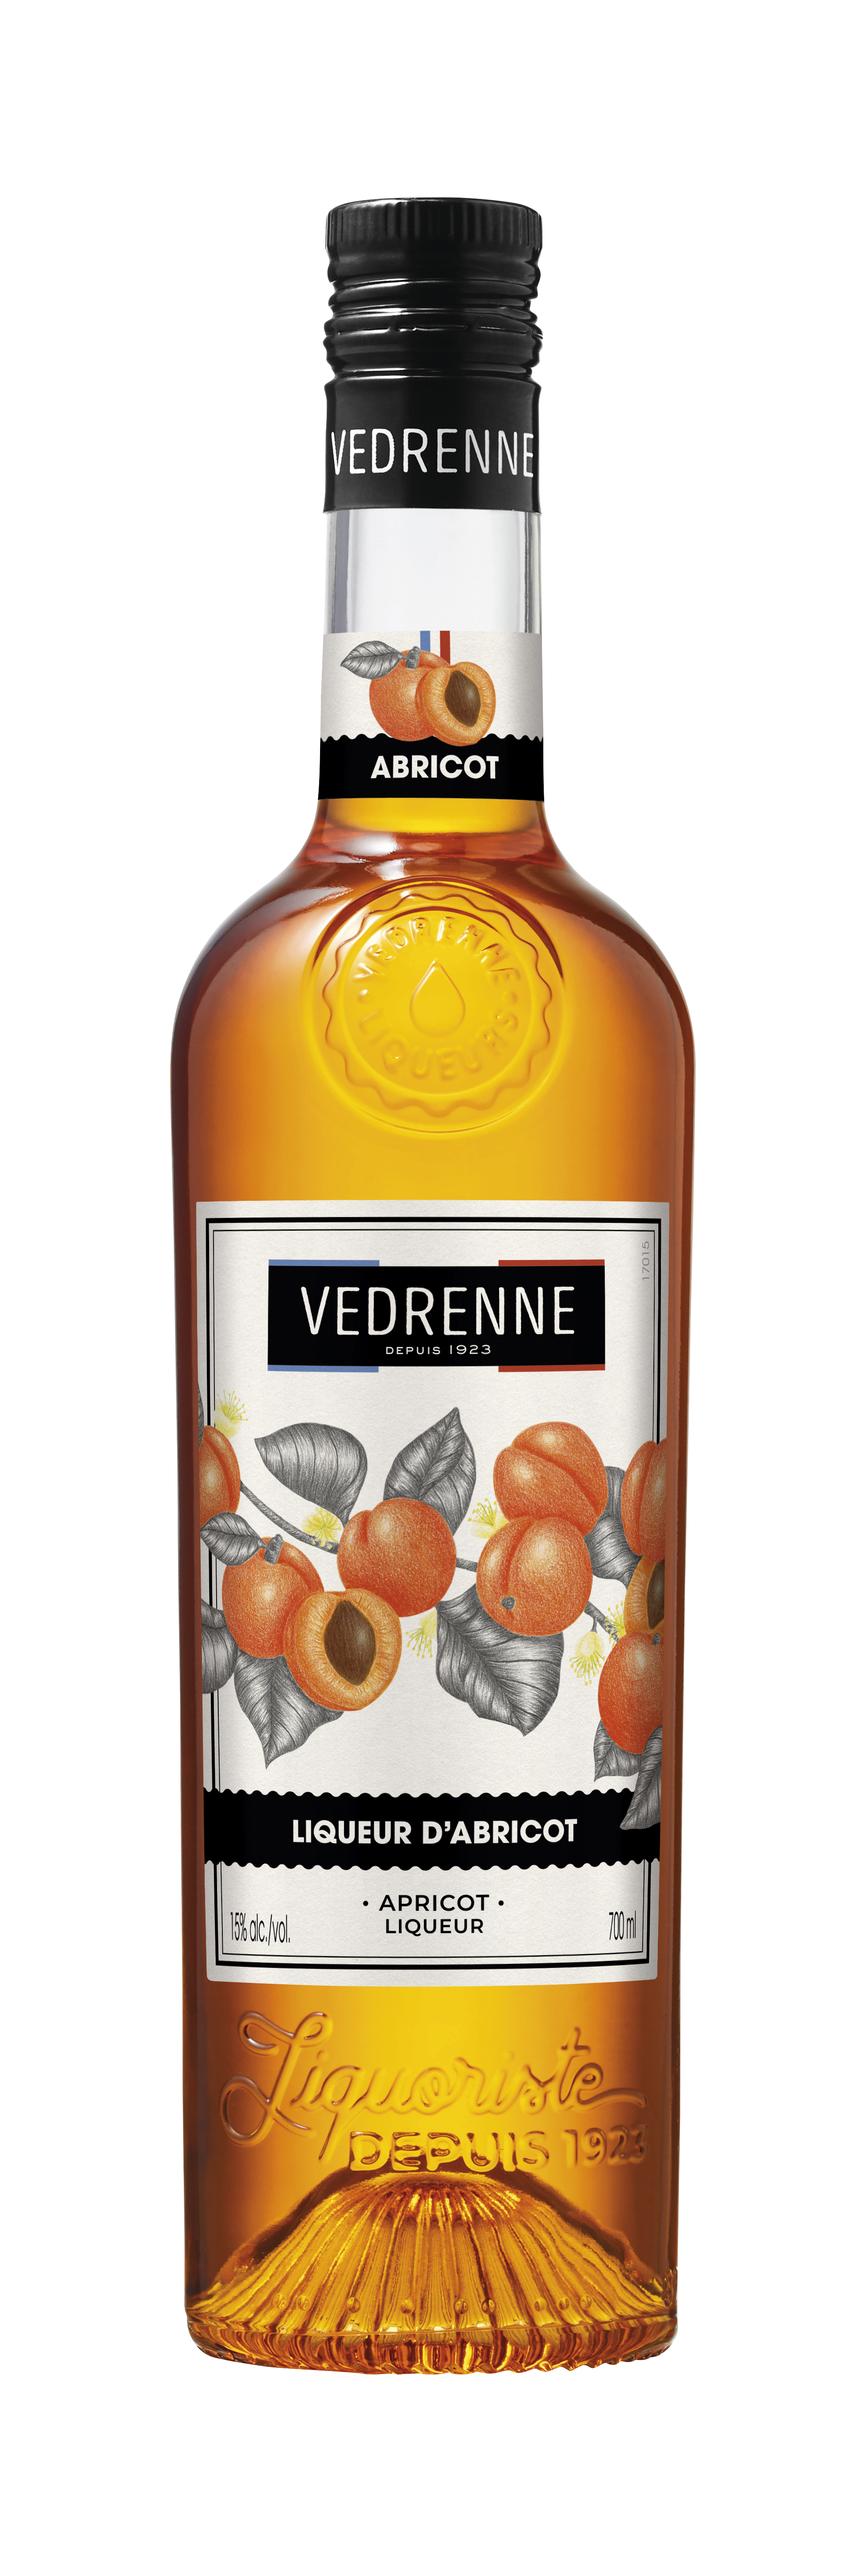 VEDRENNE Apricot Liqueur 15% - 700ml